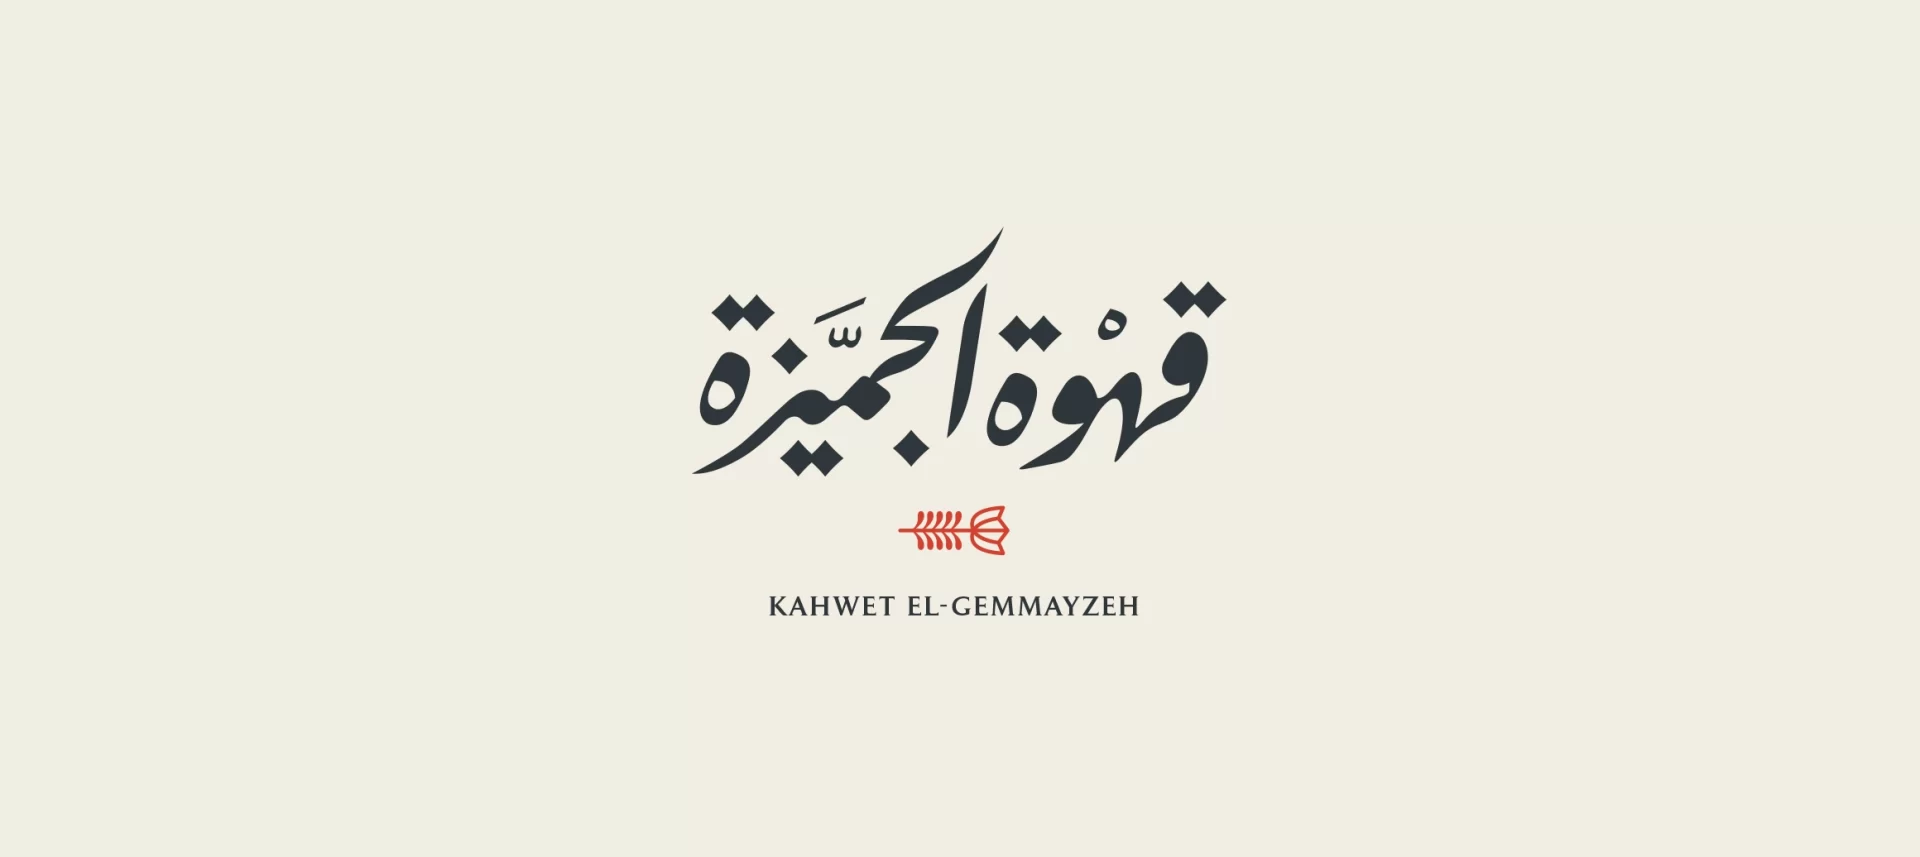 KAHWET EL-GEMMAYZEH